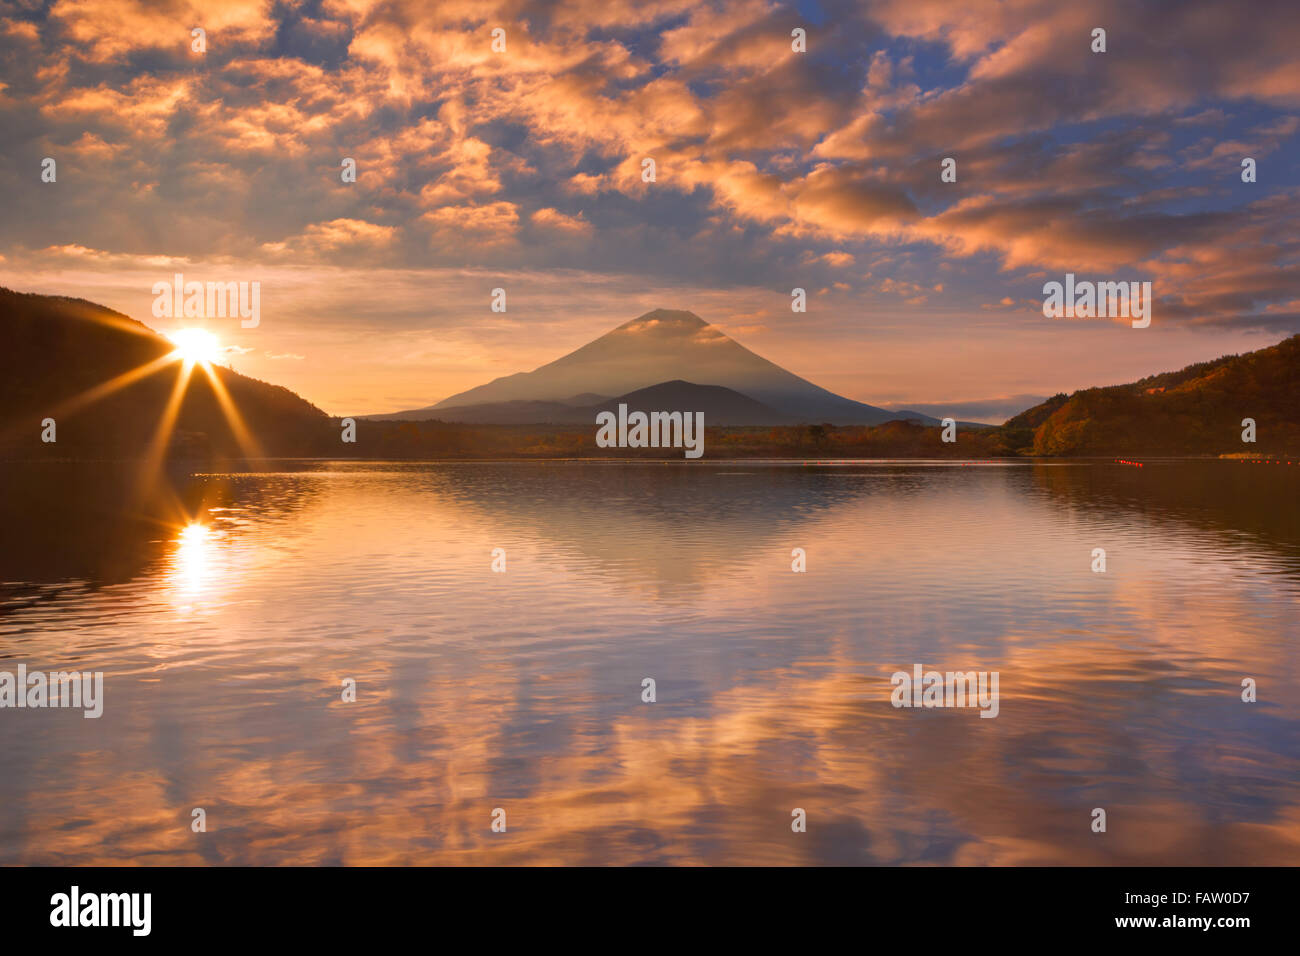 Le Mont Fuji (富士山 Fujisan,) photographié au lever du soleil depuis le lac Shoji (Shojiko, 精進湖). Banque D'Images